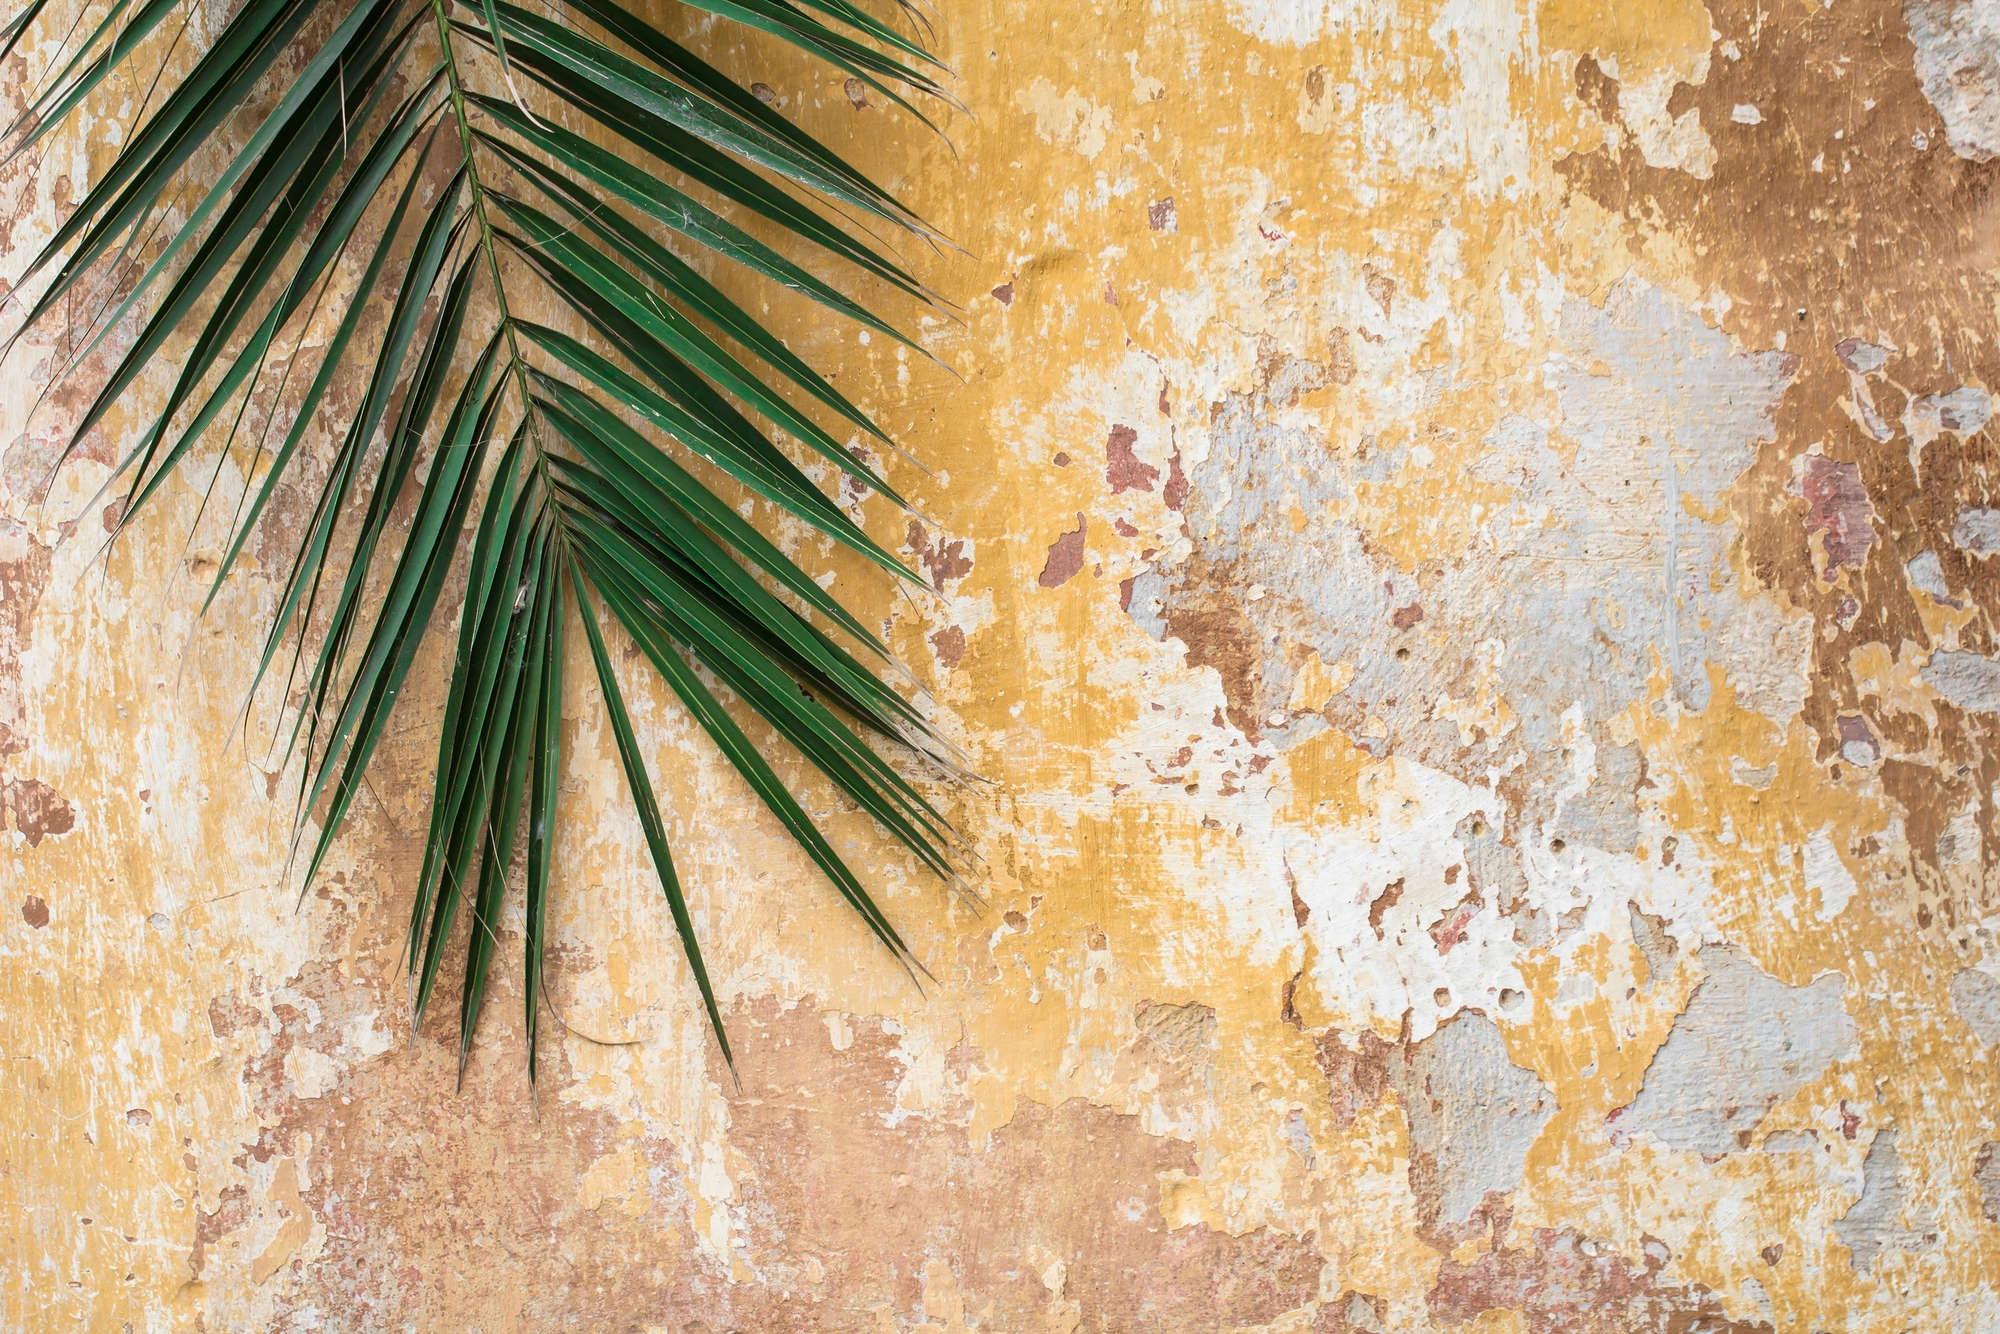             Natur Fototapete Palmenblatt vor Steinmauer auf Matt Glattvlies
        